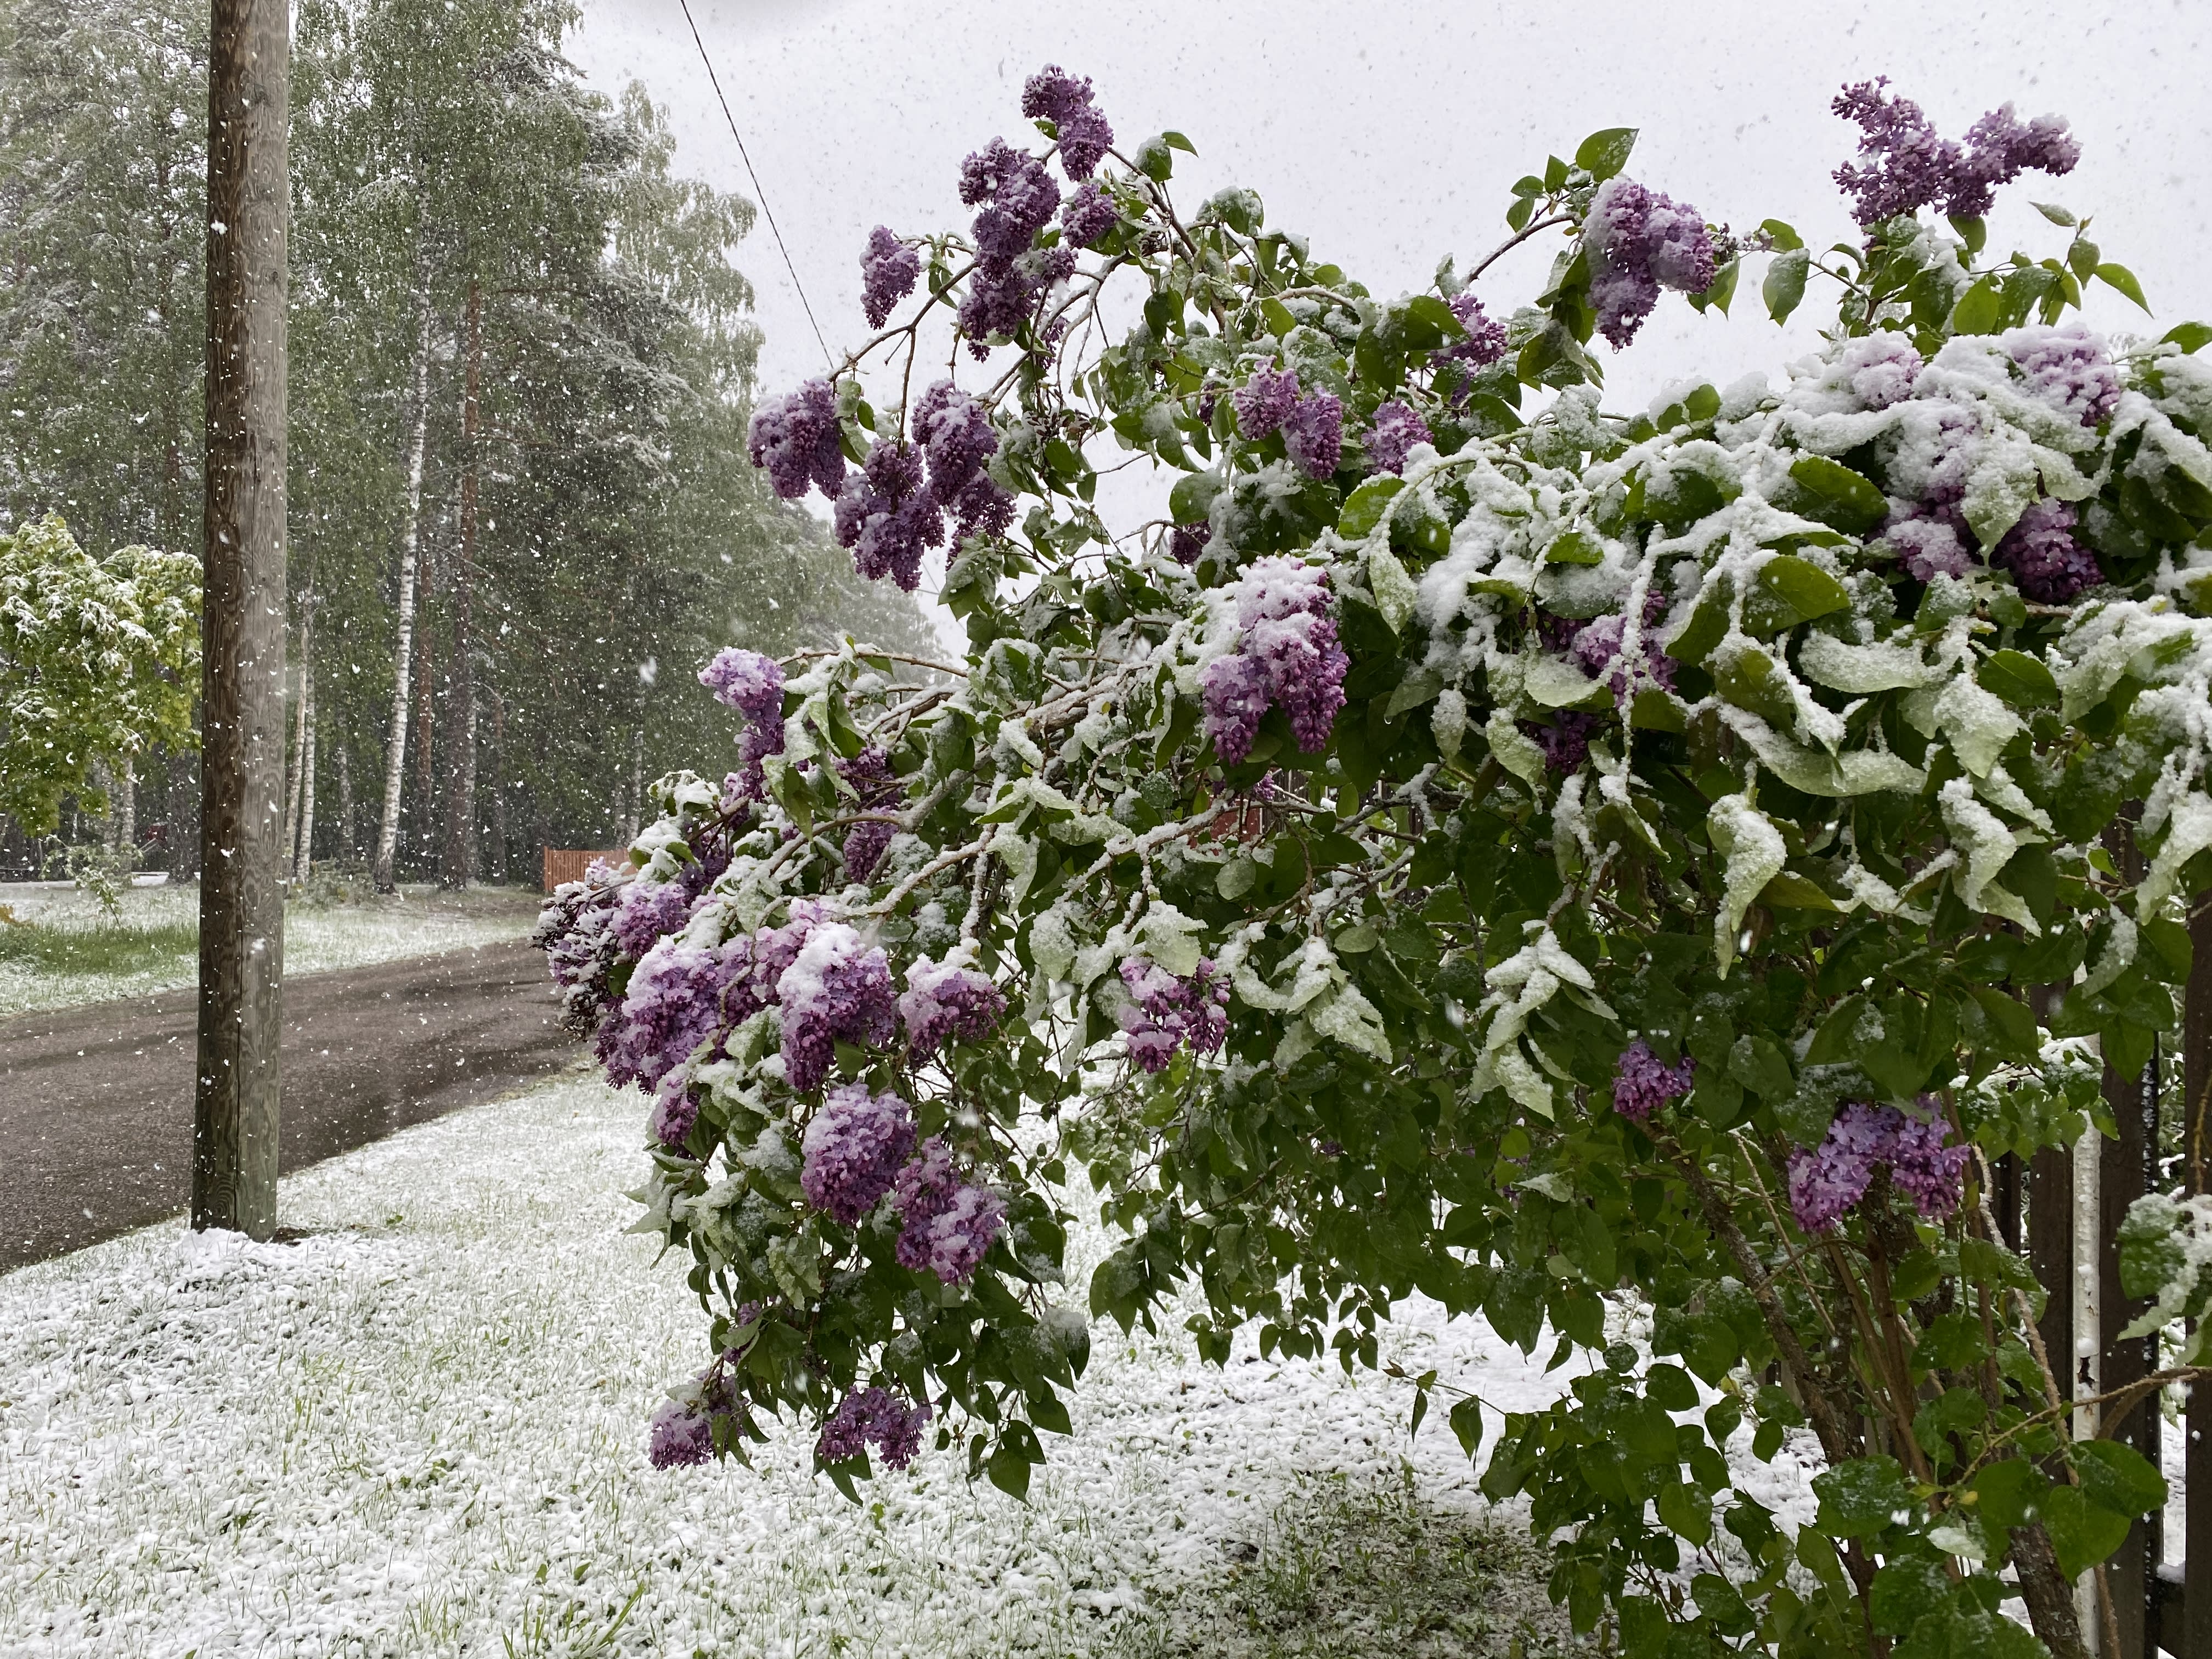 "Salji pertama" musim panas Finland boleh dilihat di Lappeenranta.